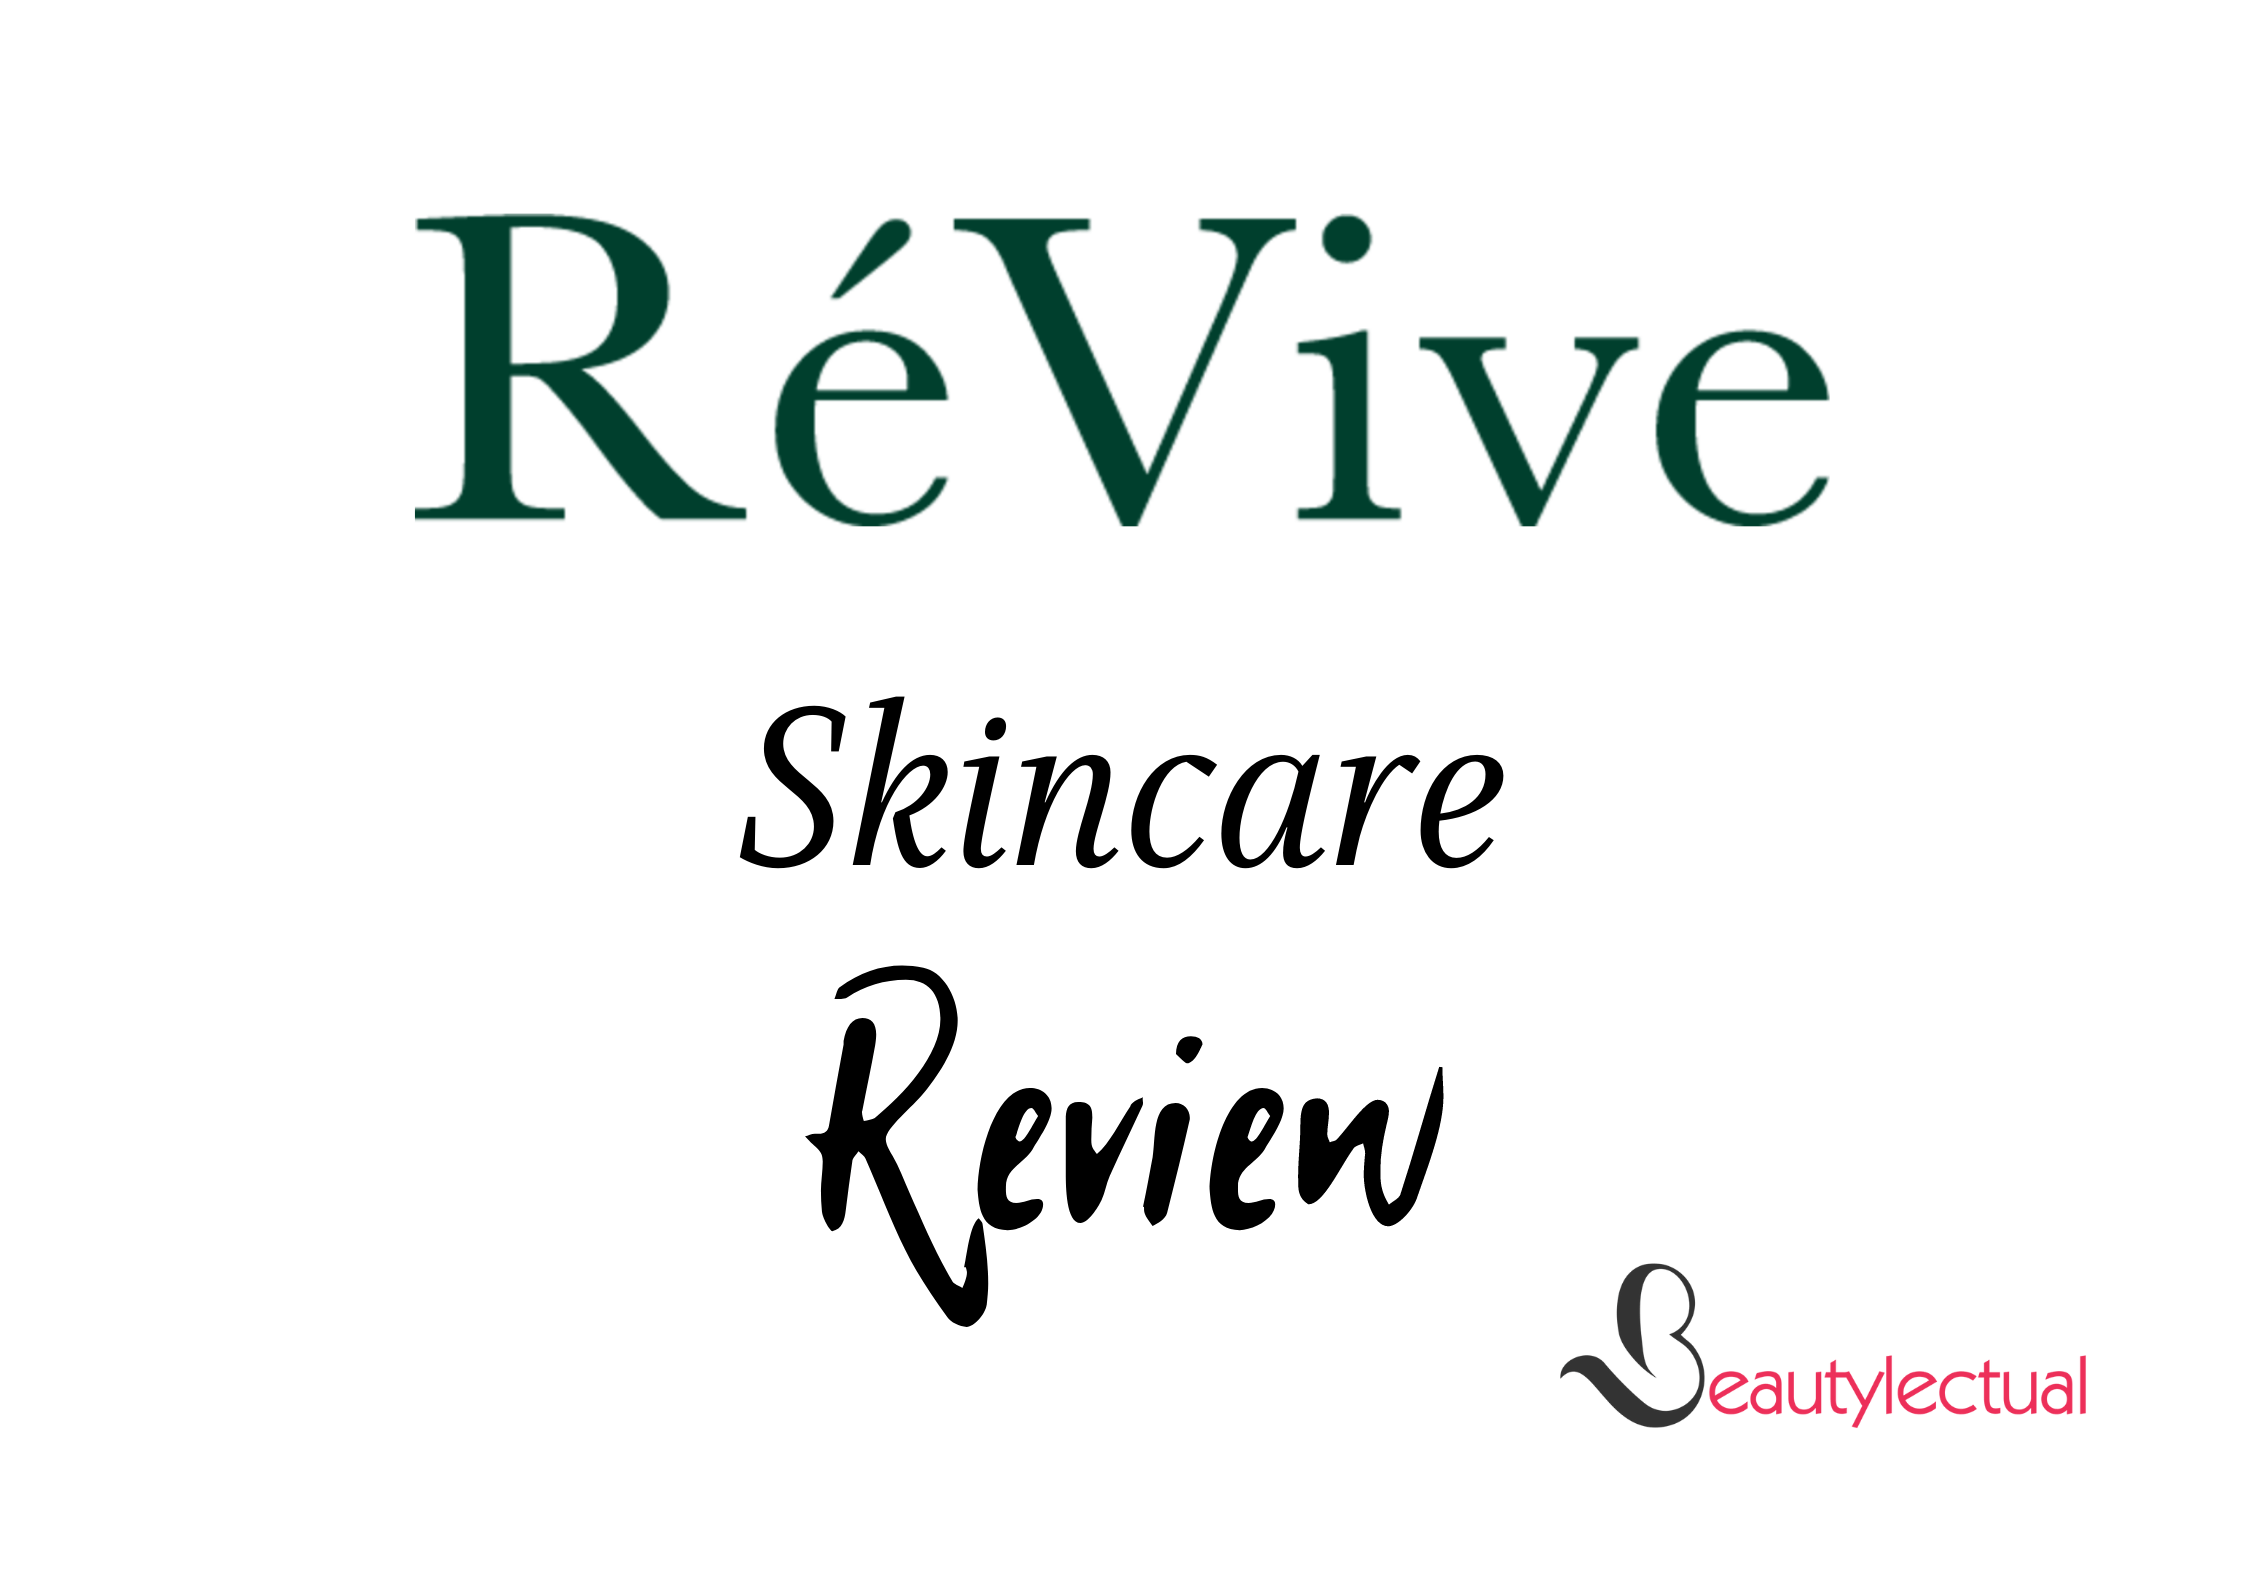 Revive Skincare Reviews